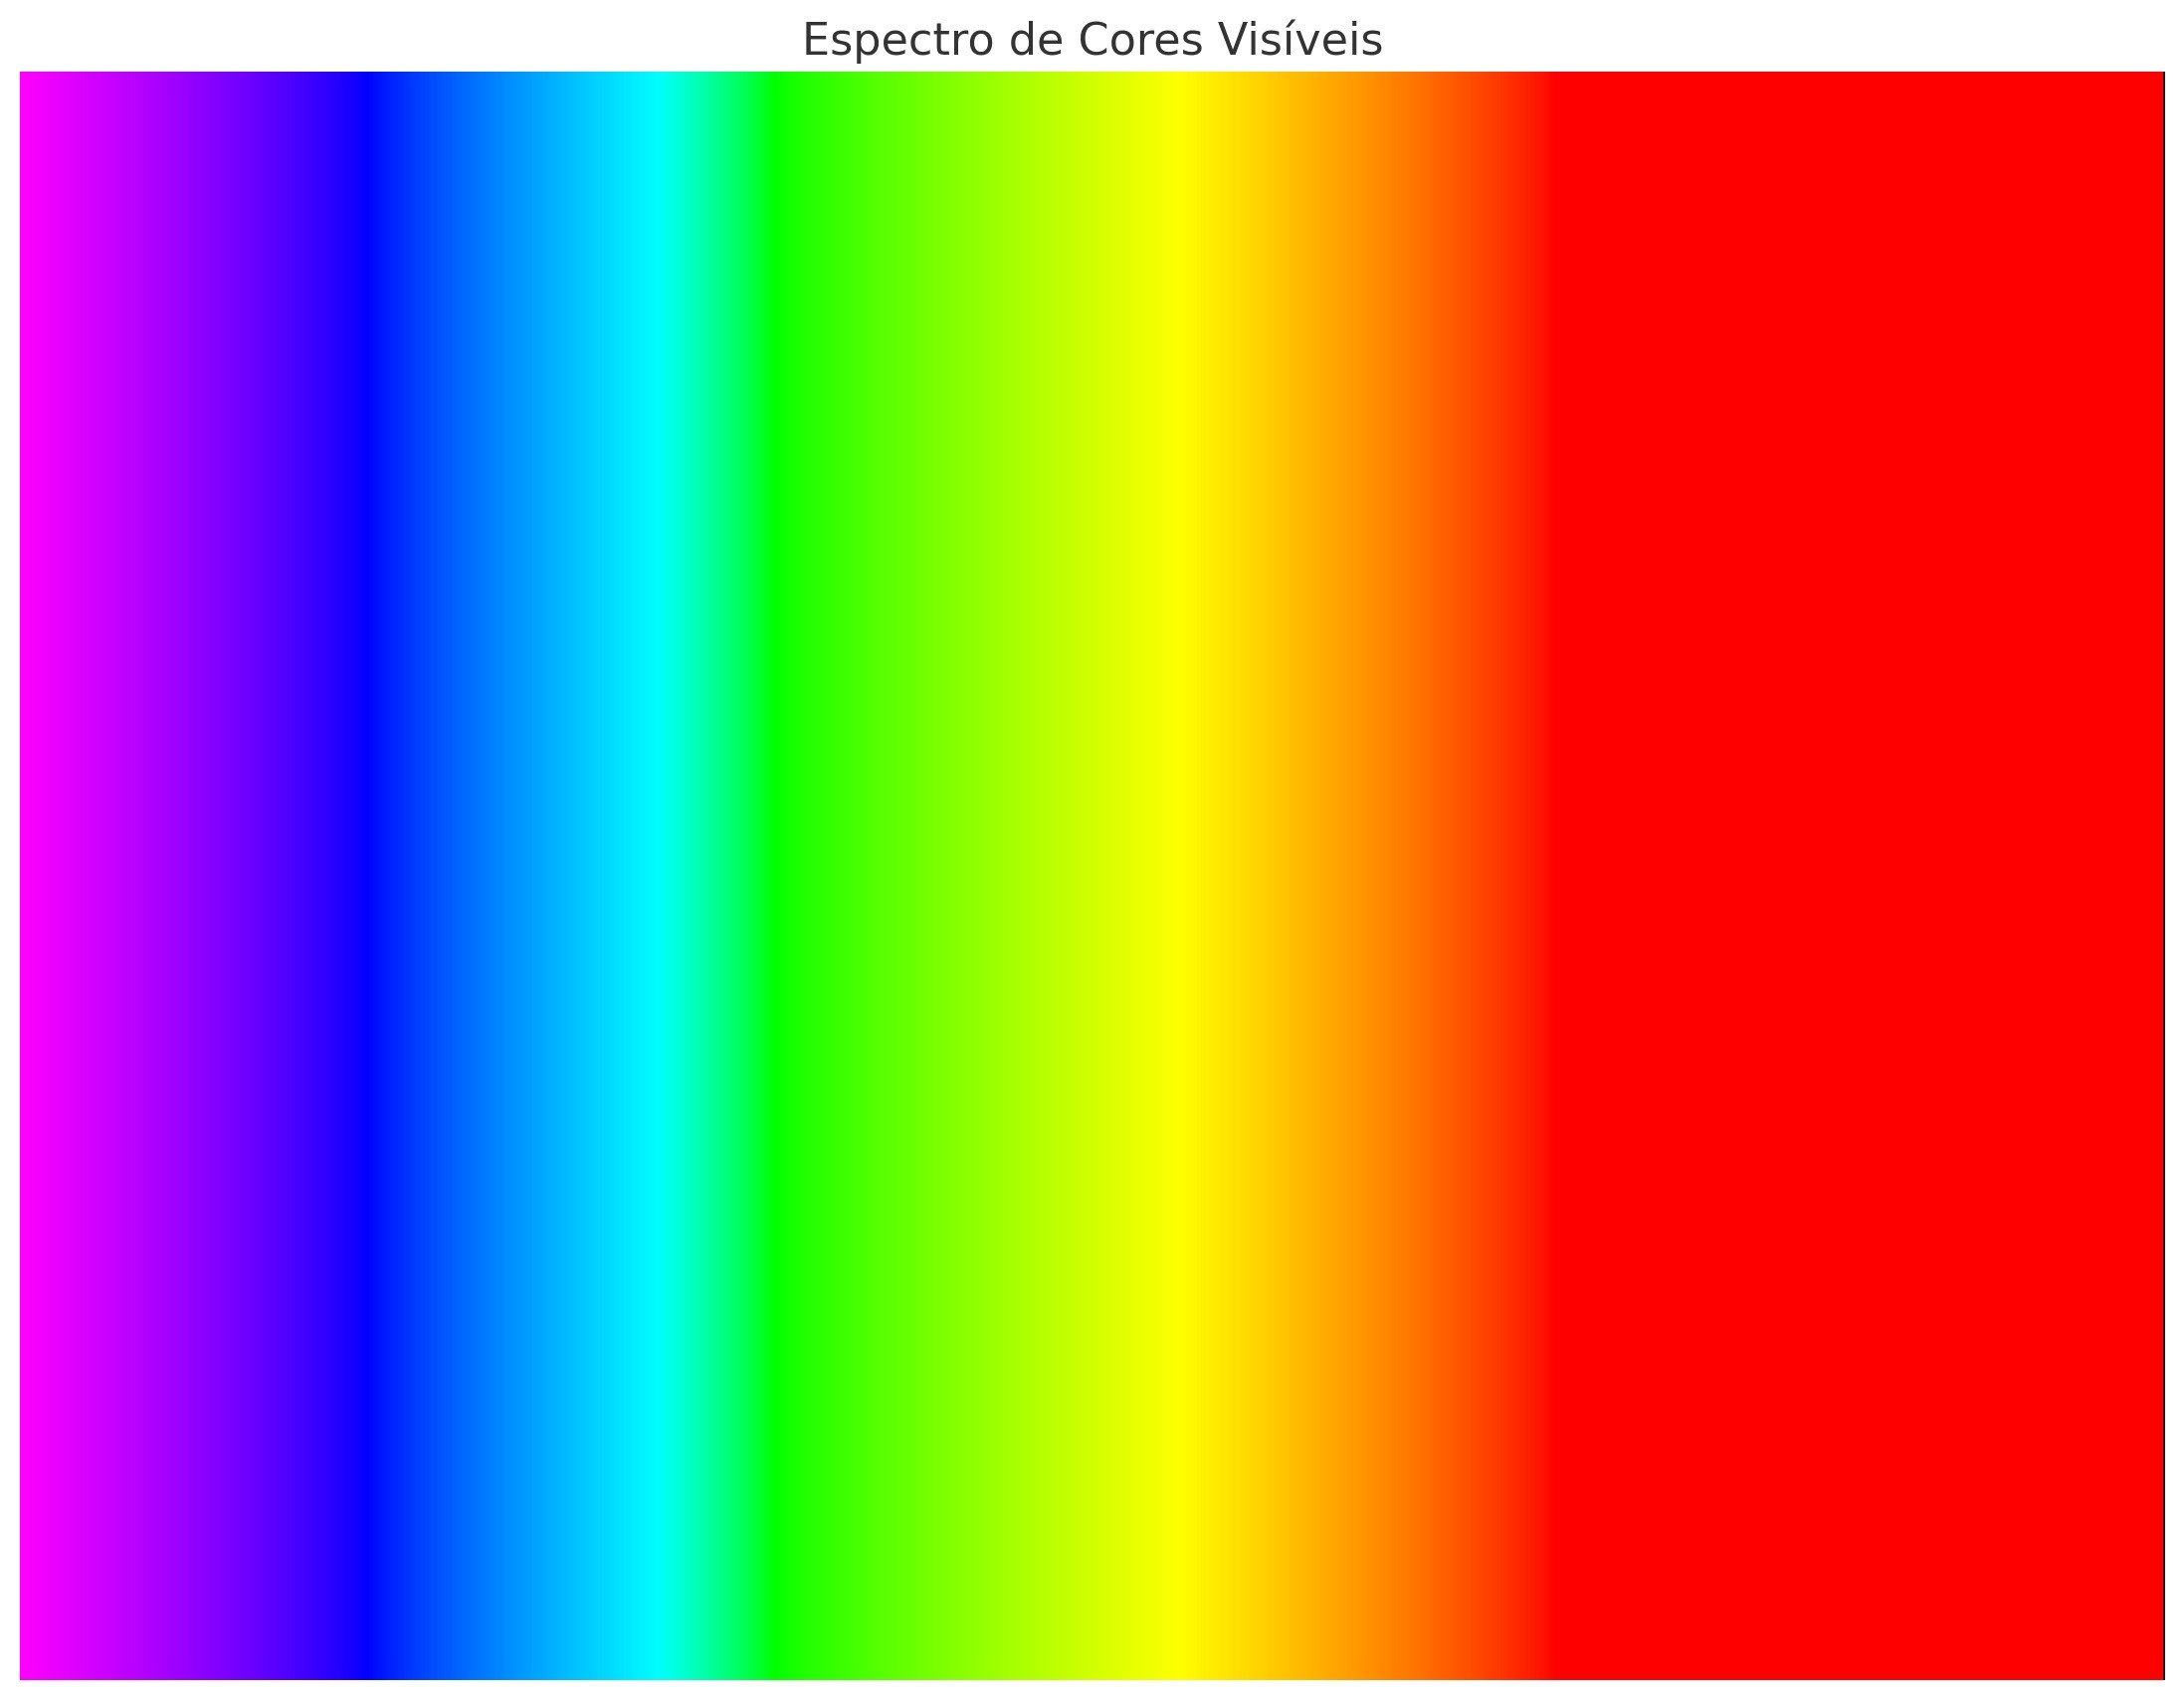 Espectro de cores visíveis